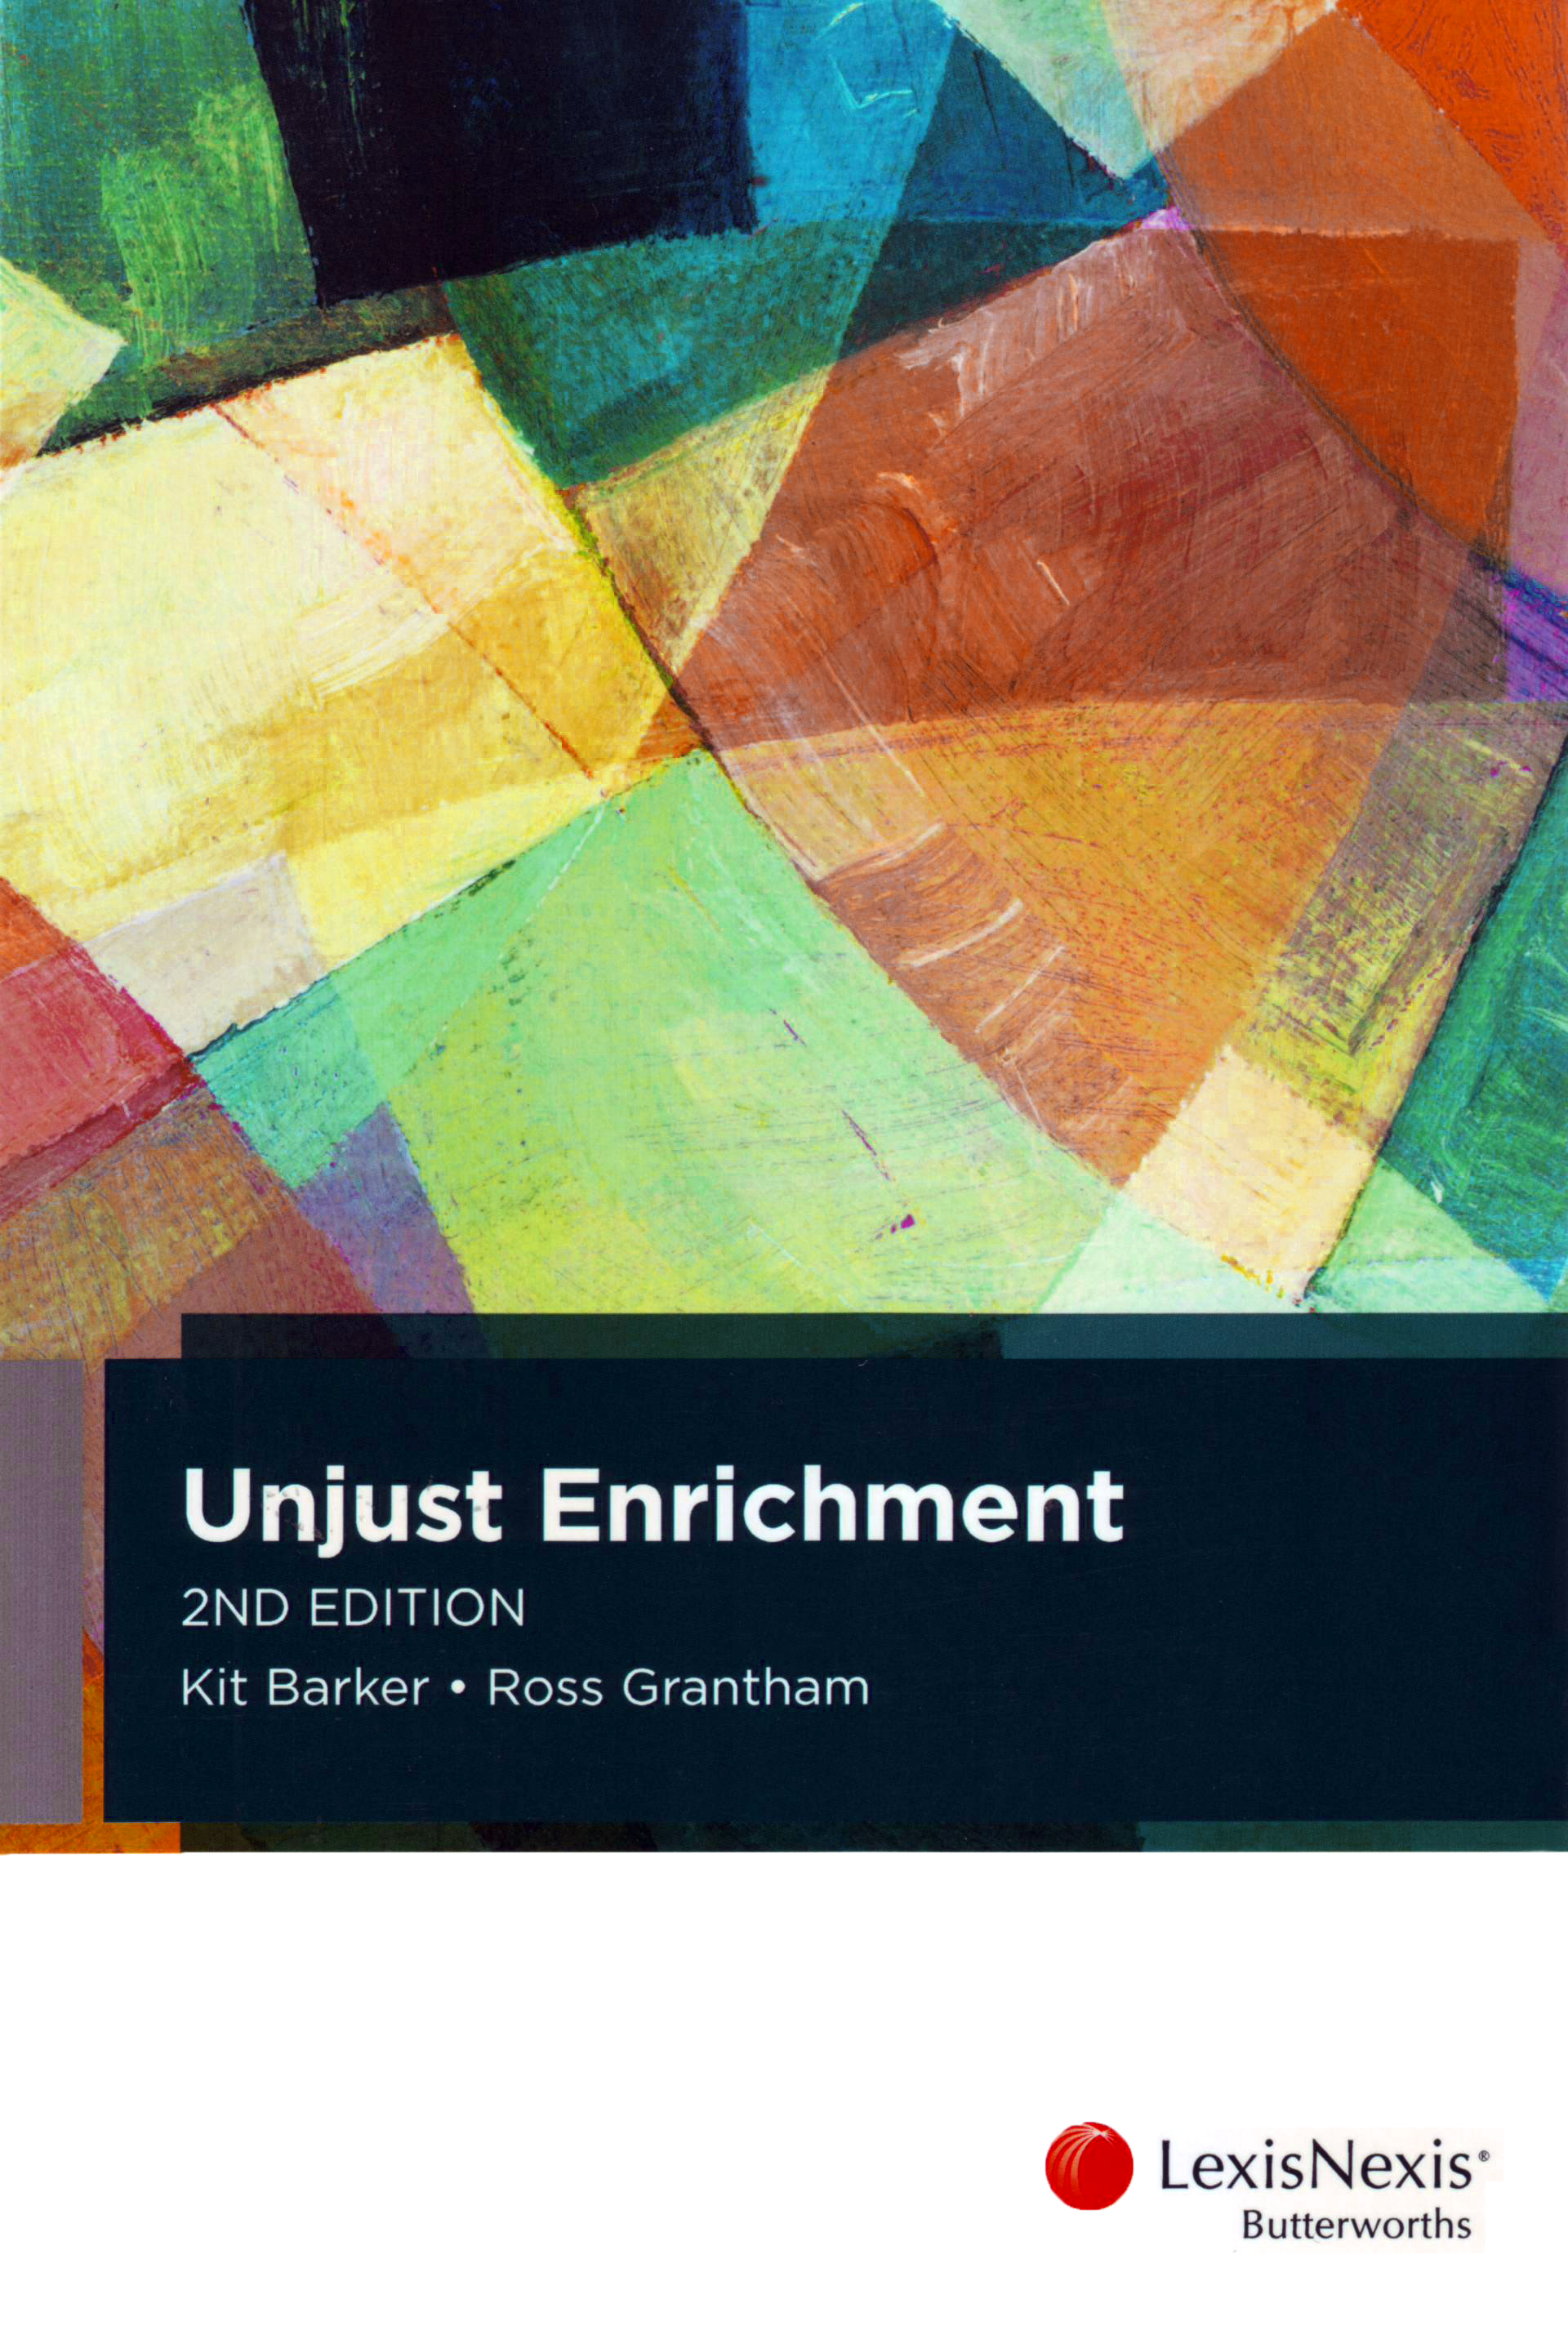 Unjust Enrichment e2